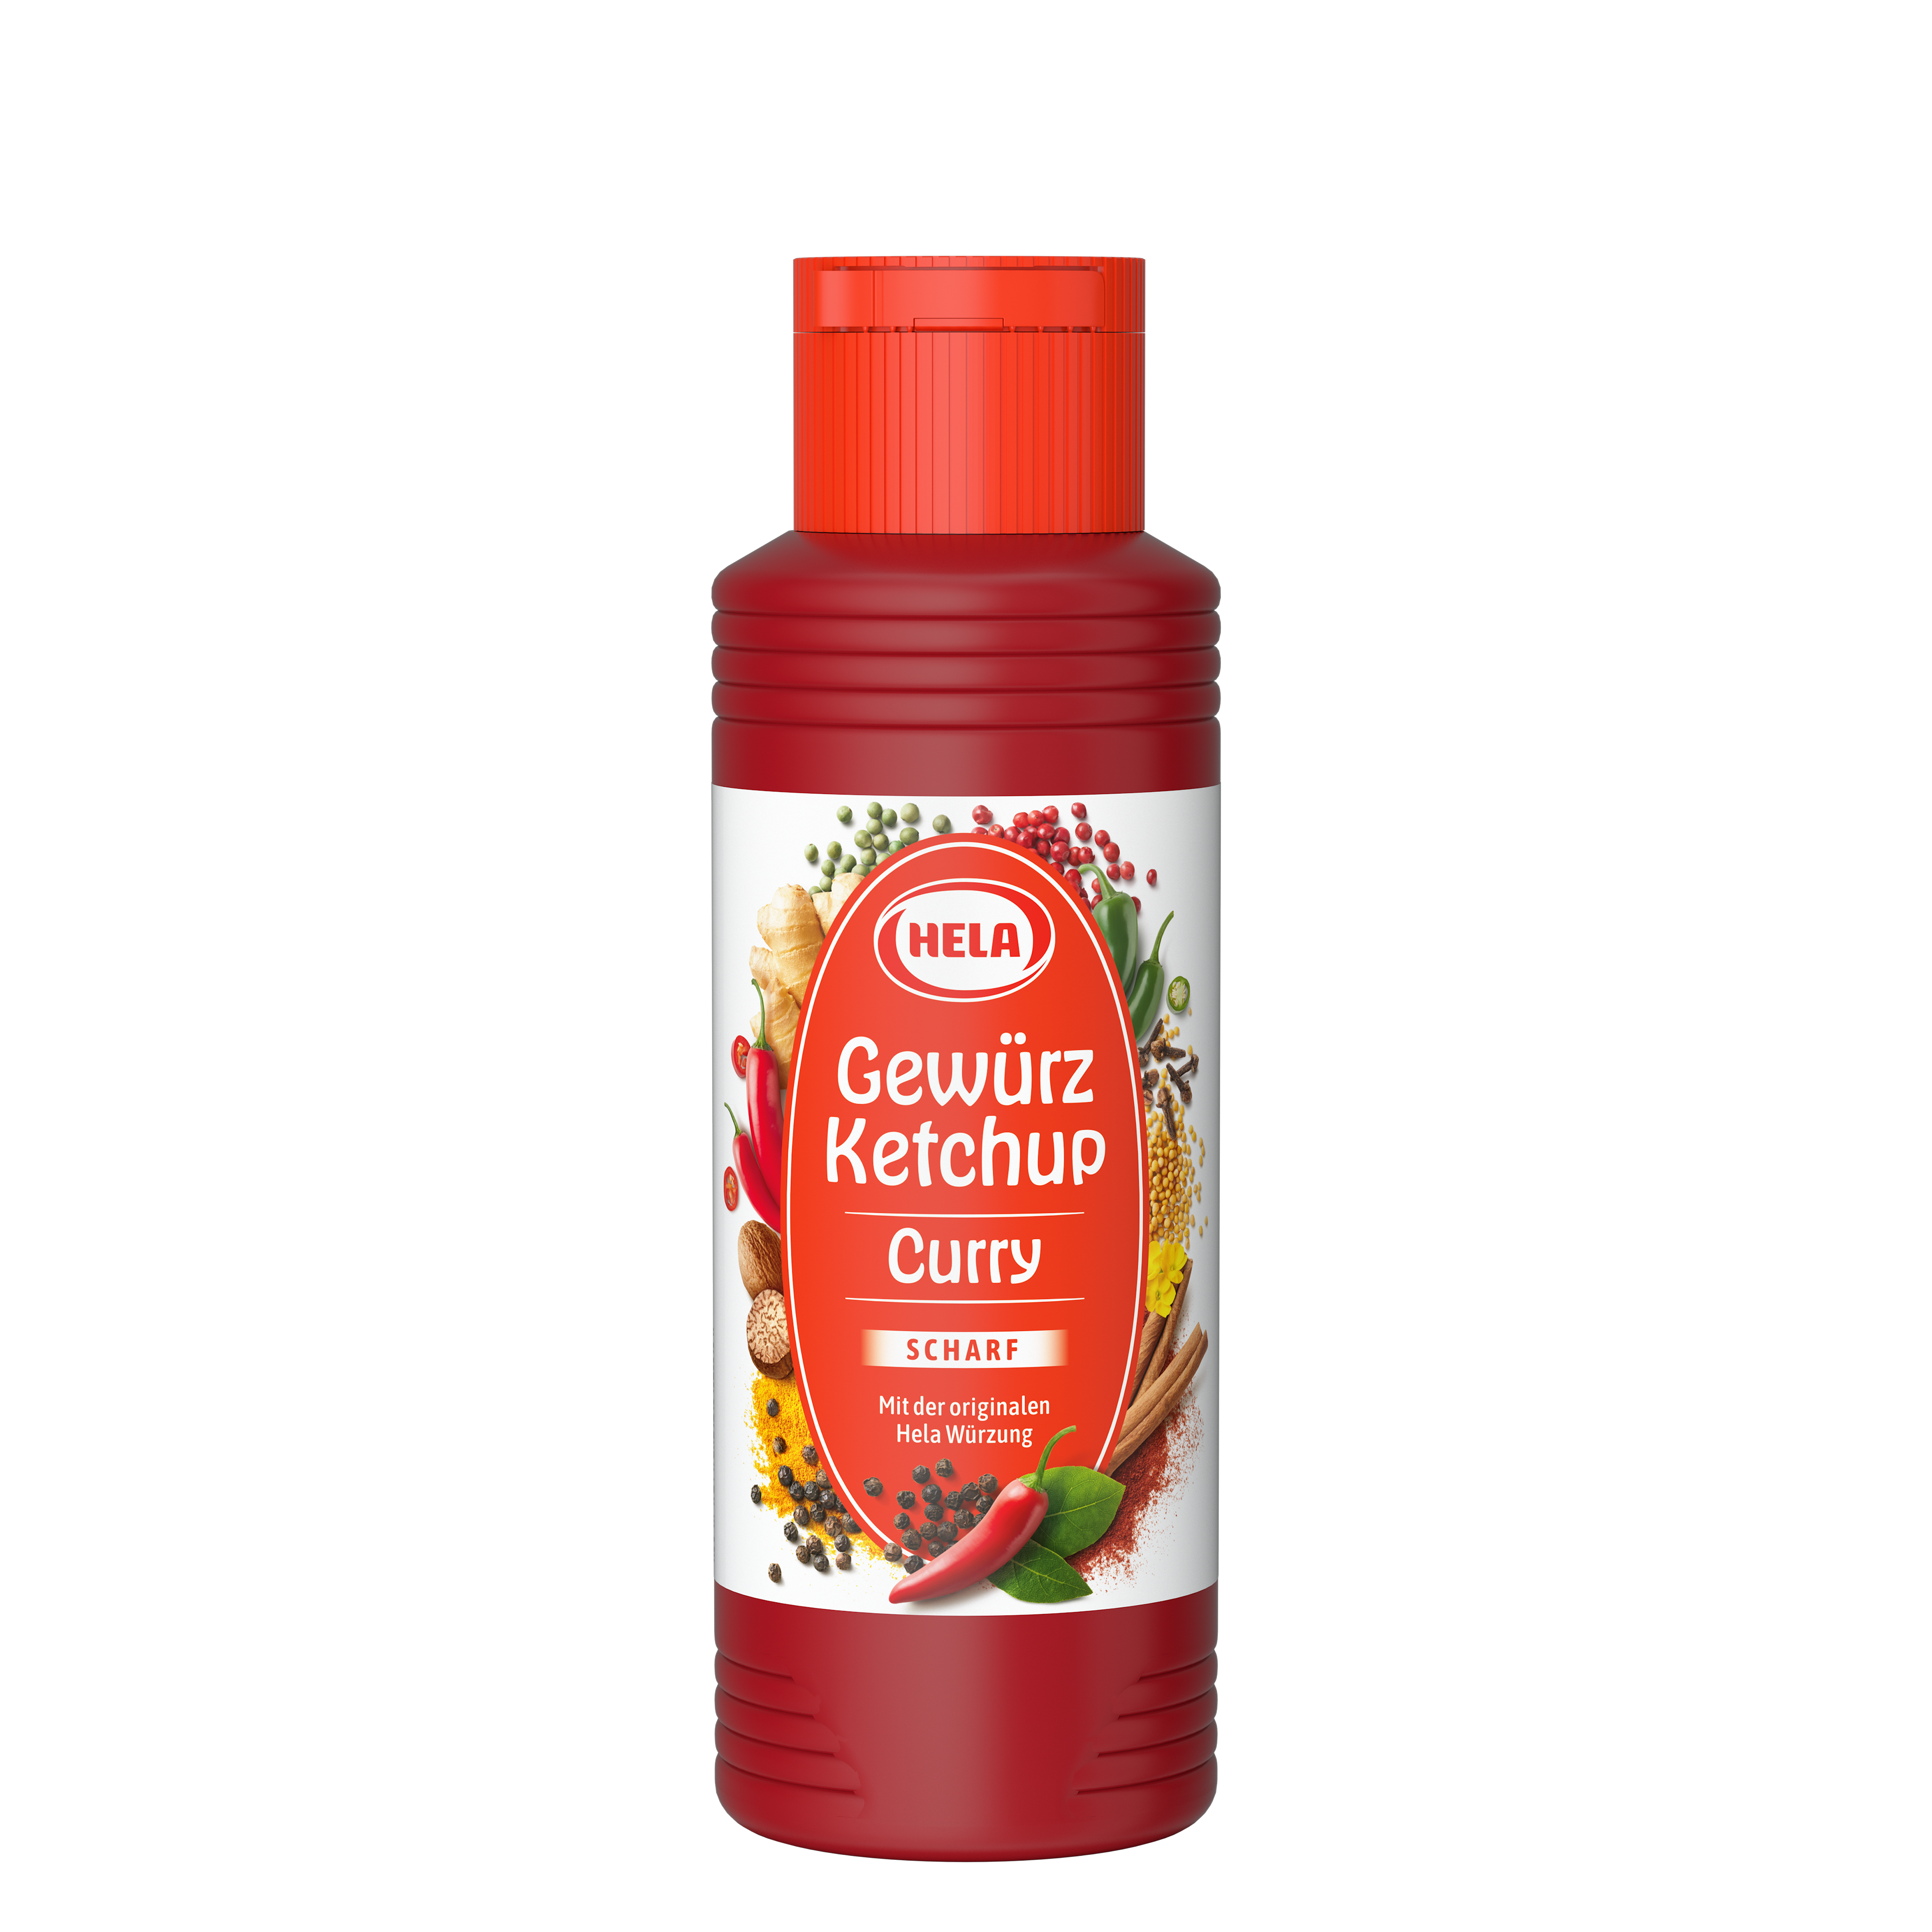 Gewürz Ketchup Curry scharf 300 ml